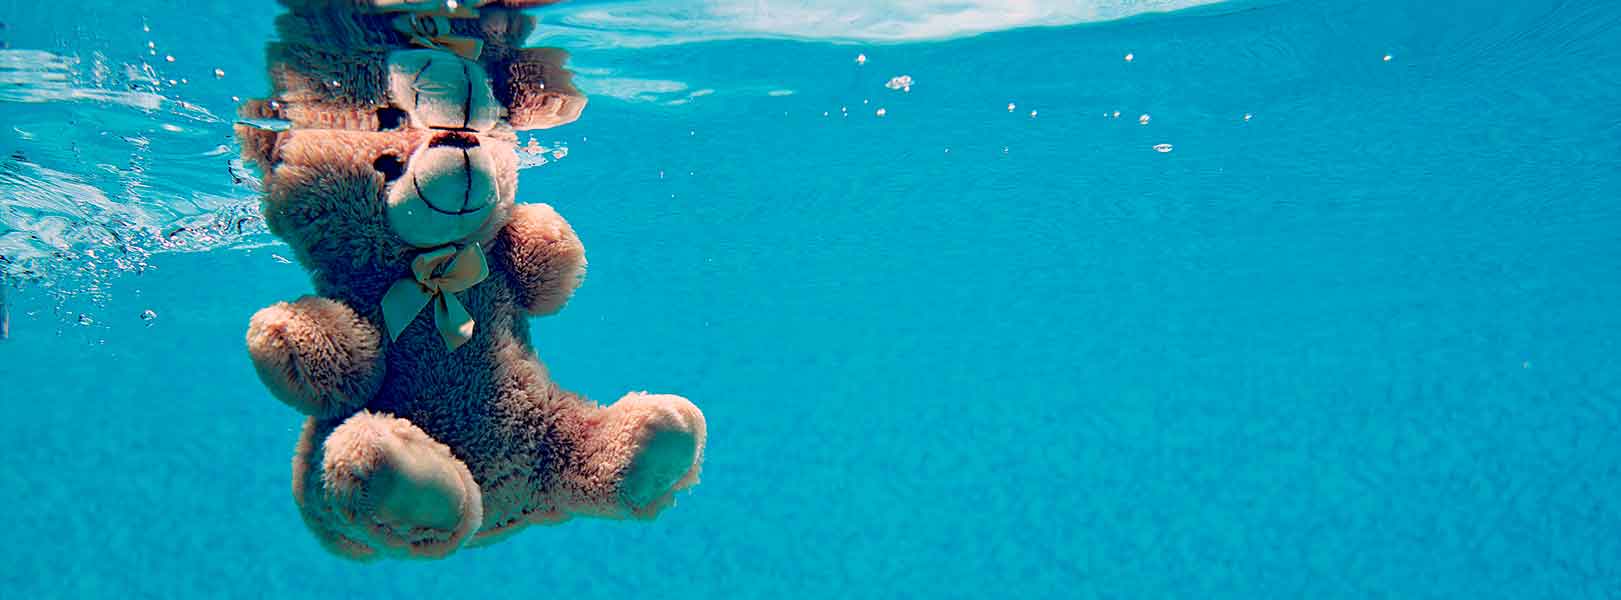 Prevenir o afogamento em idade pediátrica